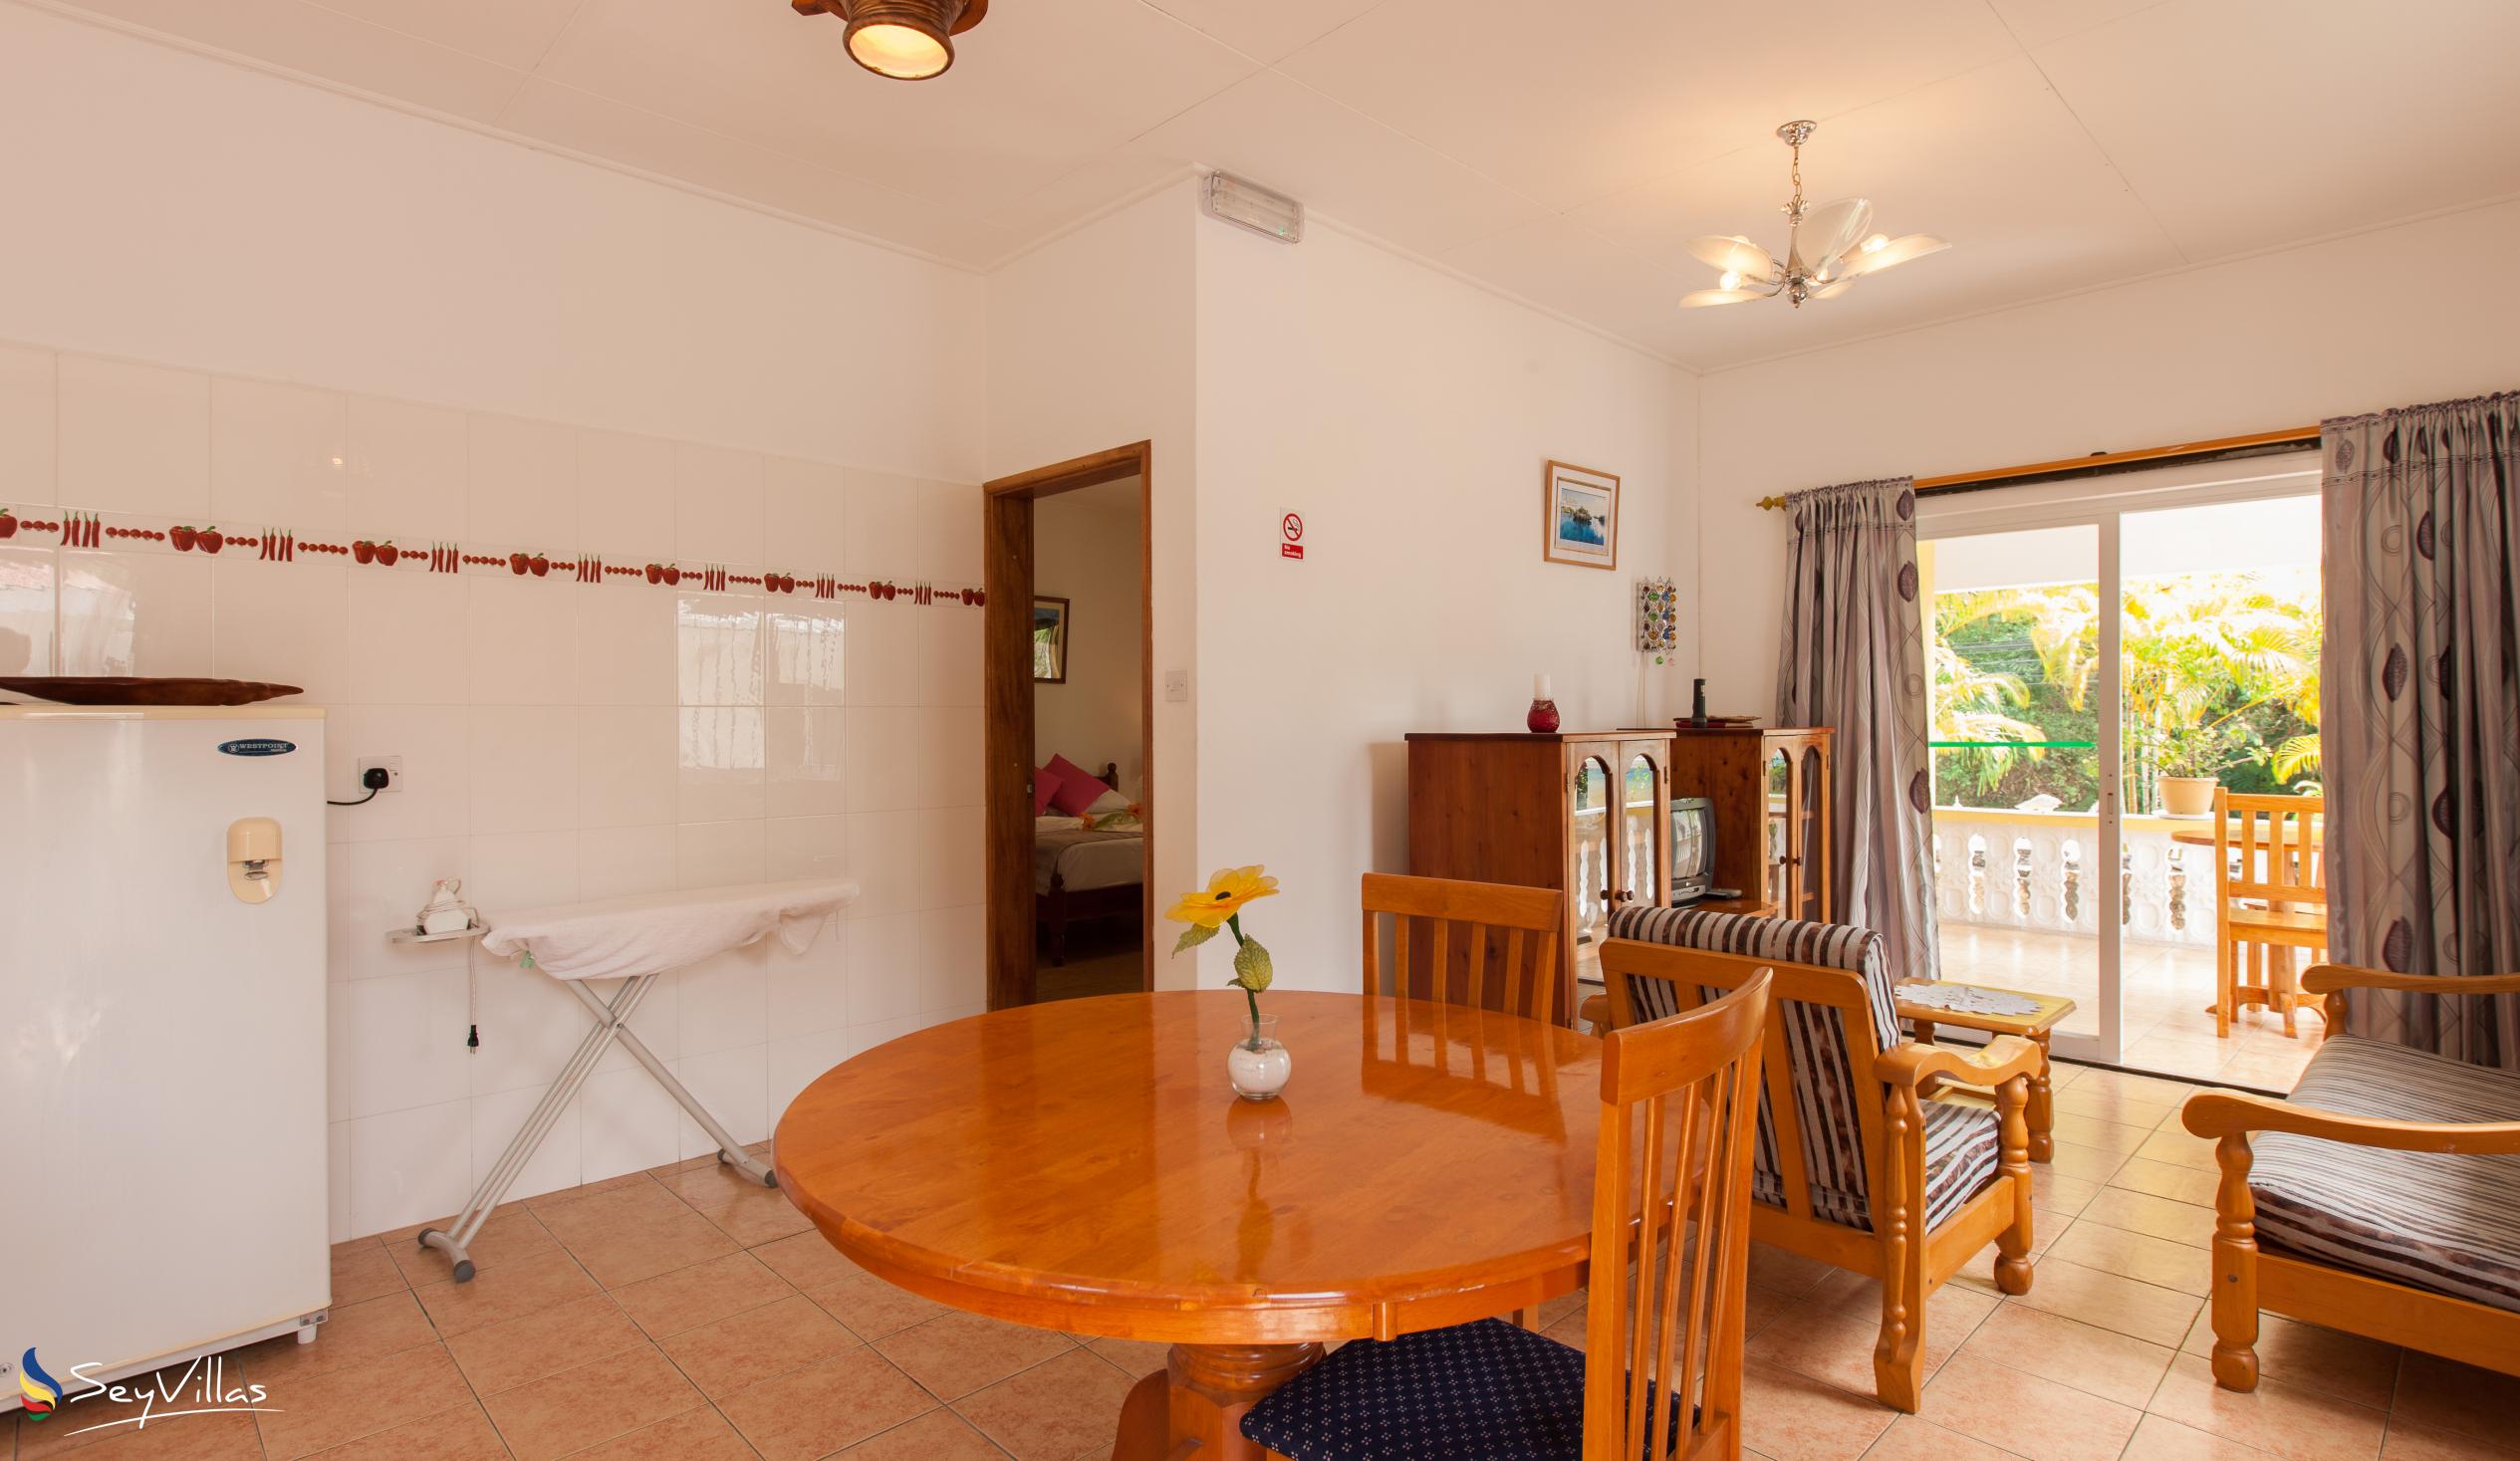 Foto 53: Acquario Villa - Appartement mit 1 Schlafzimmer - Praslin (Seychellen)